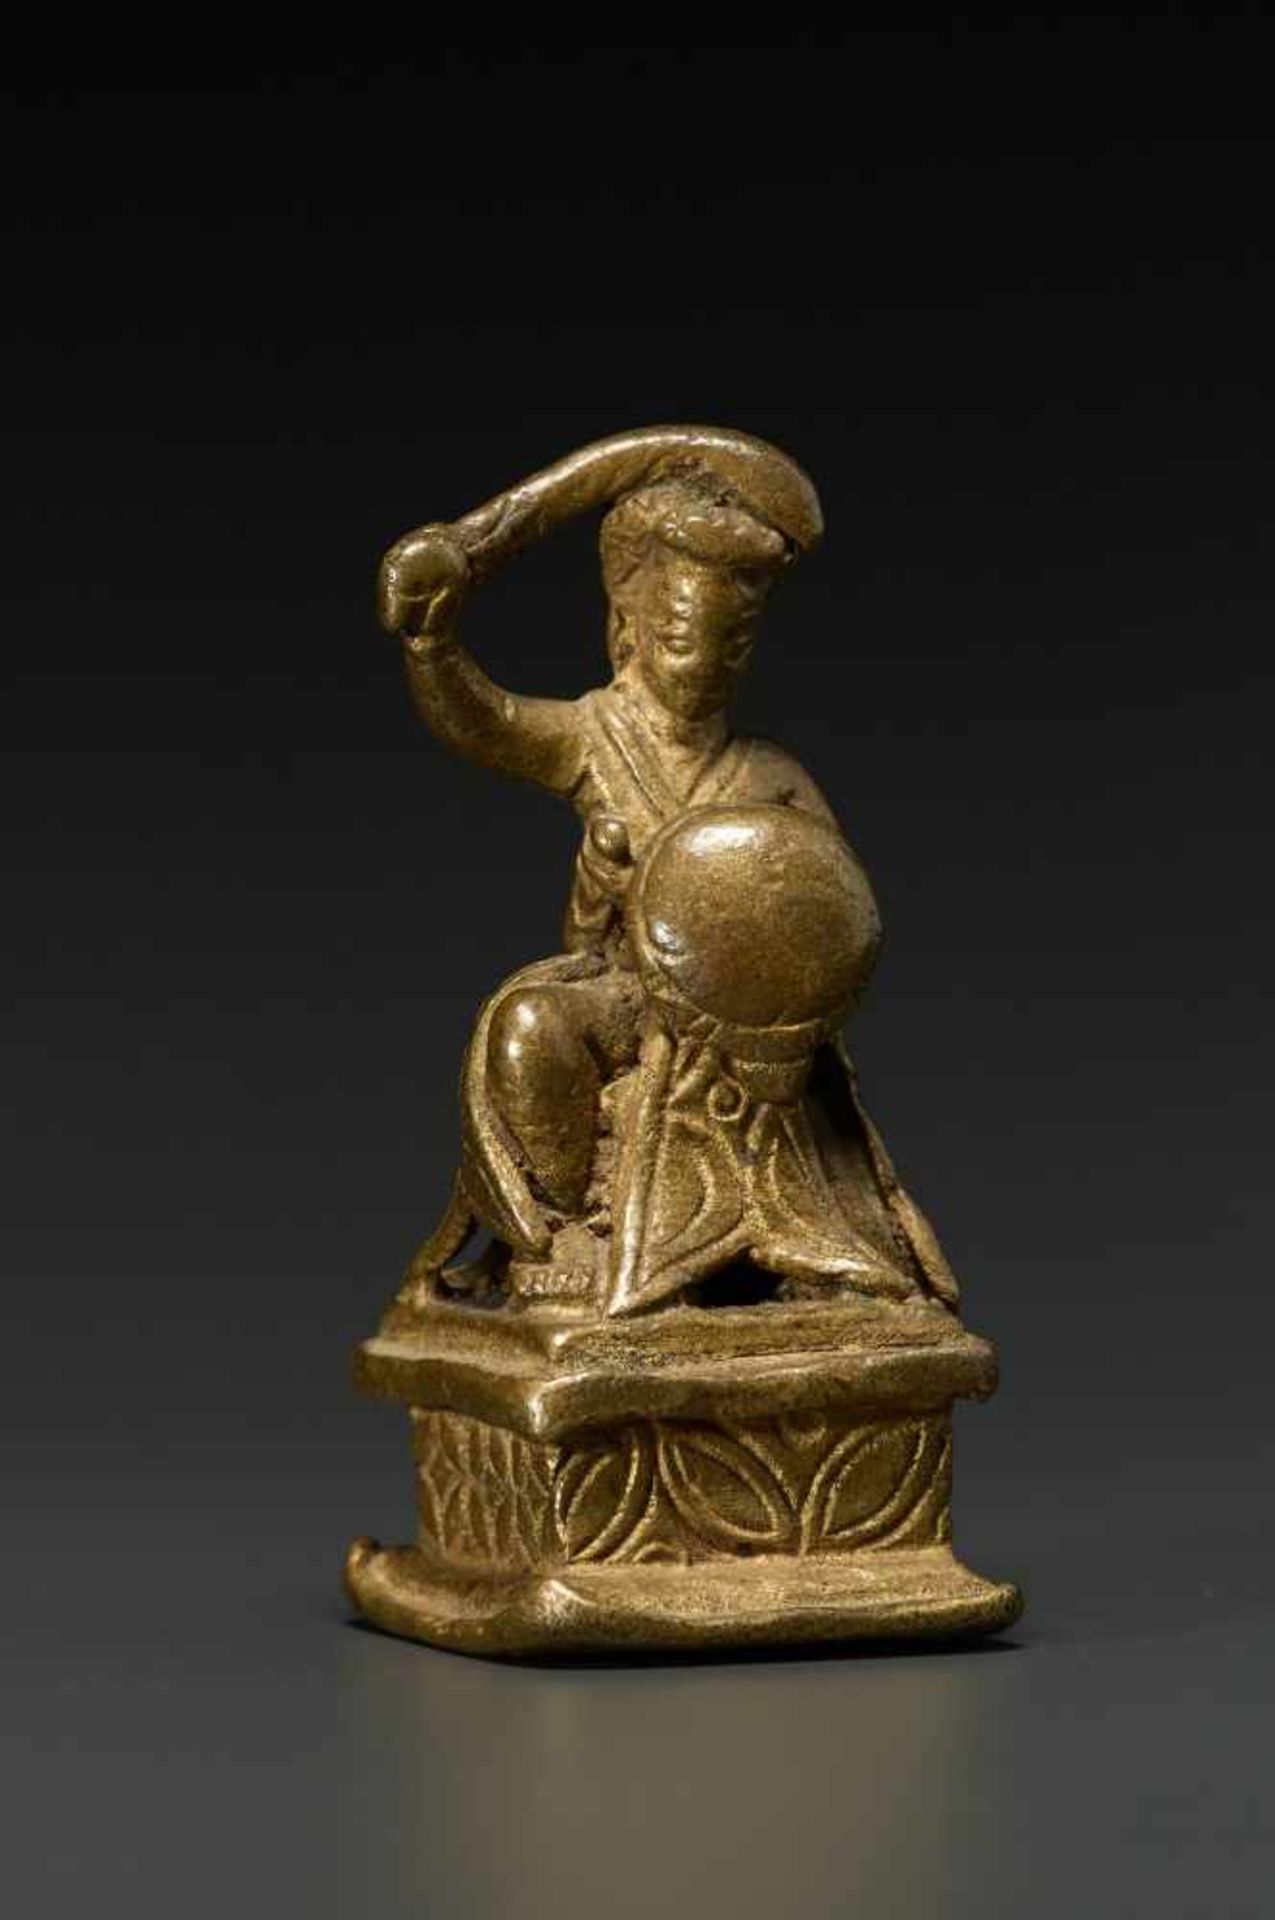 SKANDA WITH SWORD AND SHIELDBronze, Indiaapprox. 19th cent.A small bronze representation of Skanda